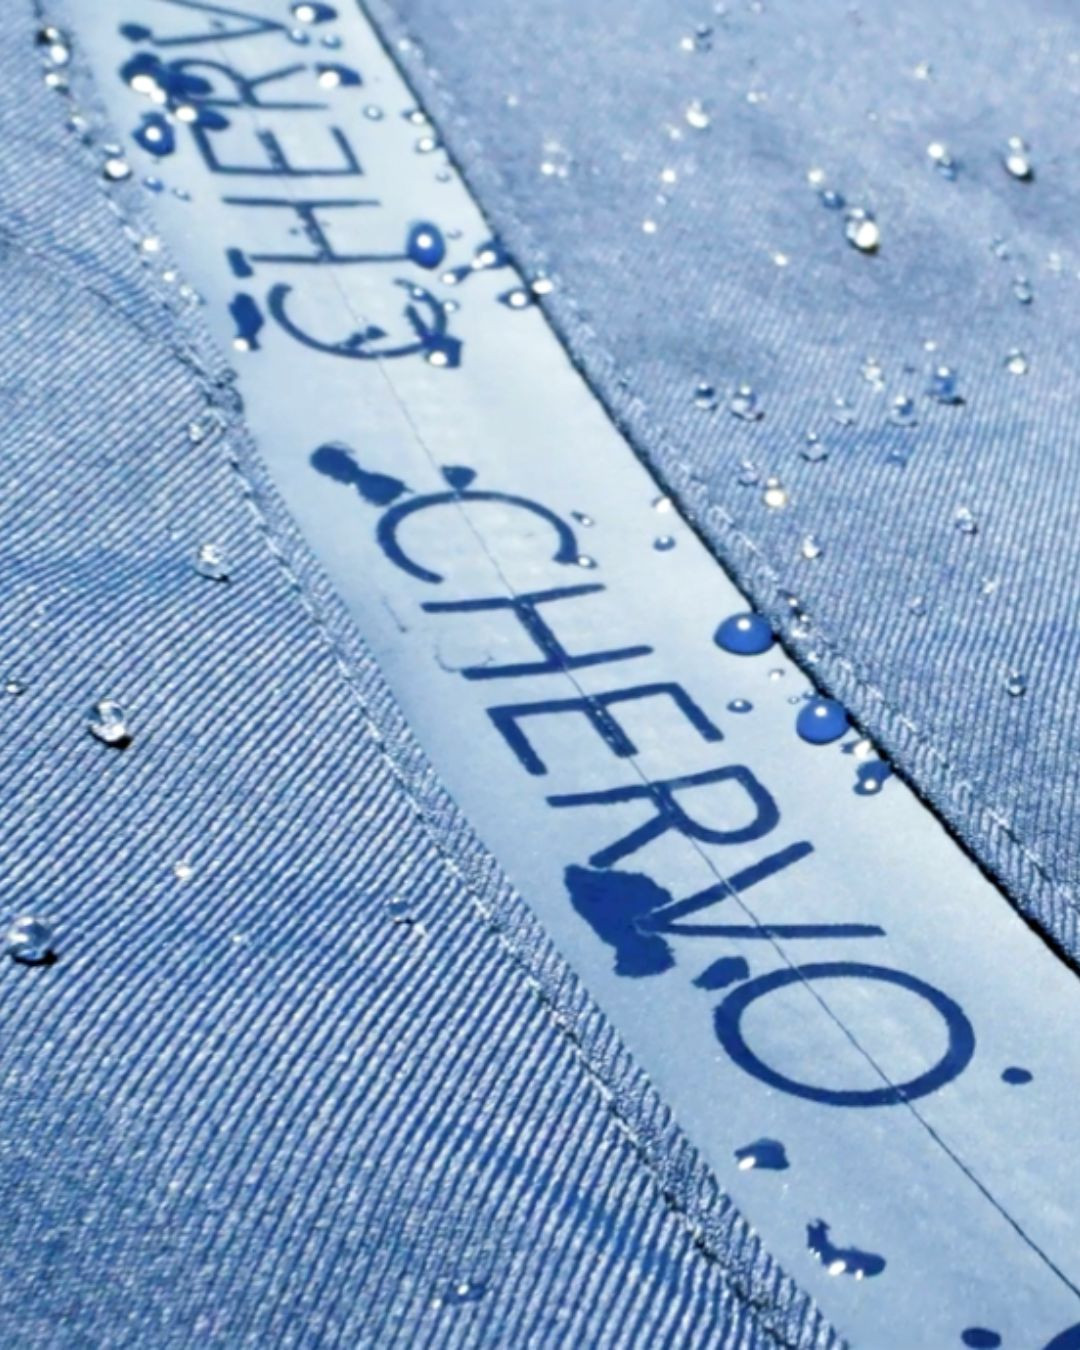 Bề mặt chống nước, sản phẩm của Chervo không chỉ bảo vệ người mặc khỏi nước và bẩn mà còn duy trì thoáng khí.